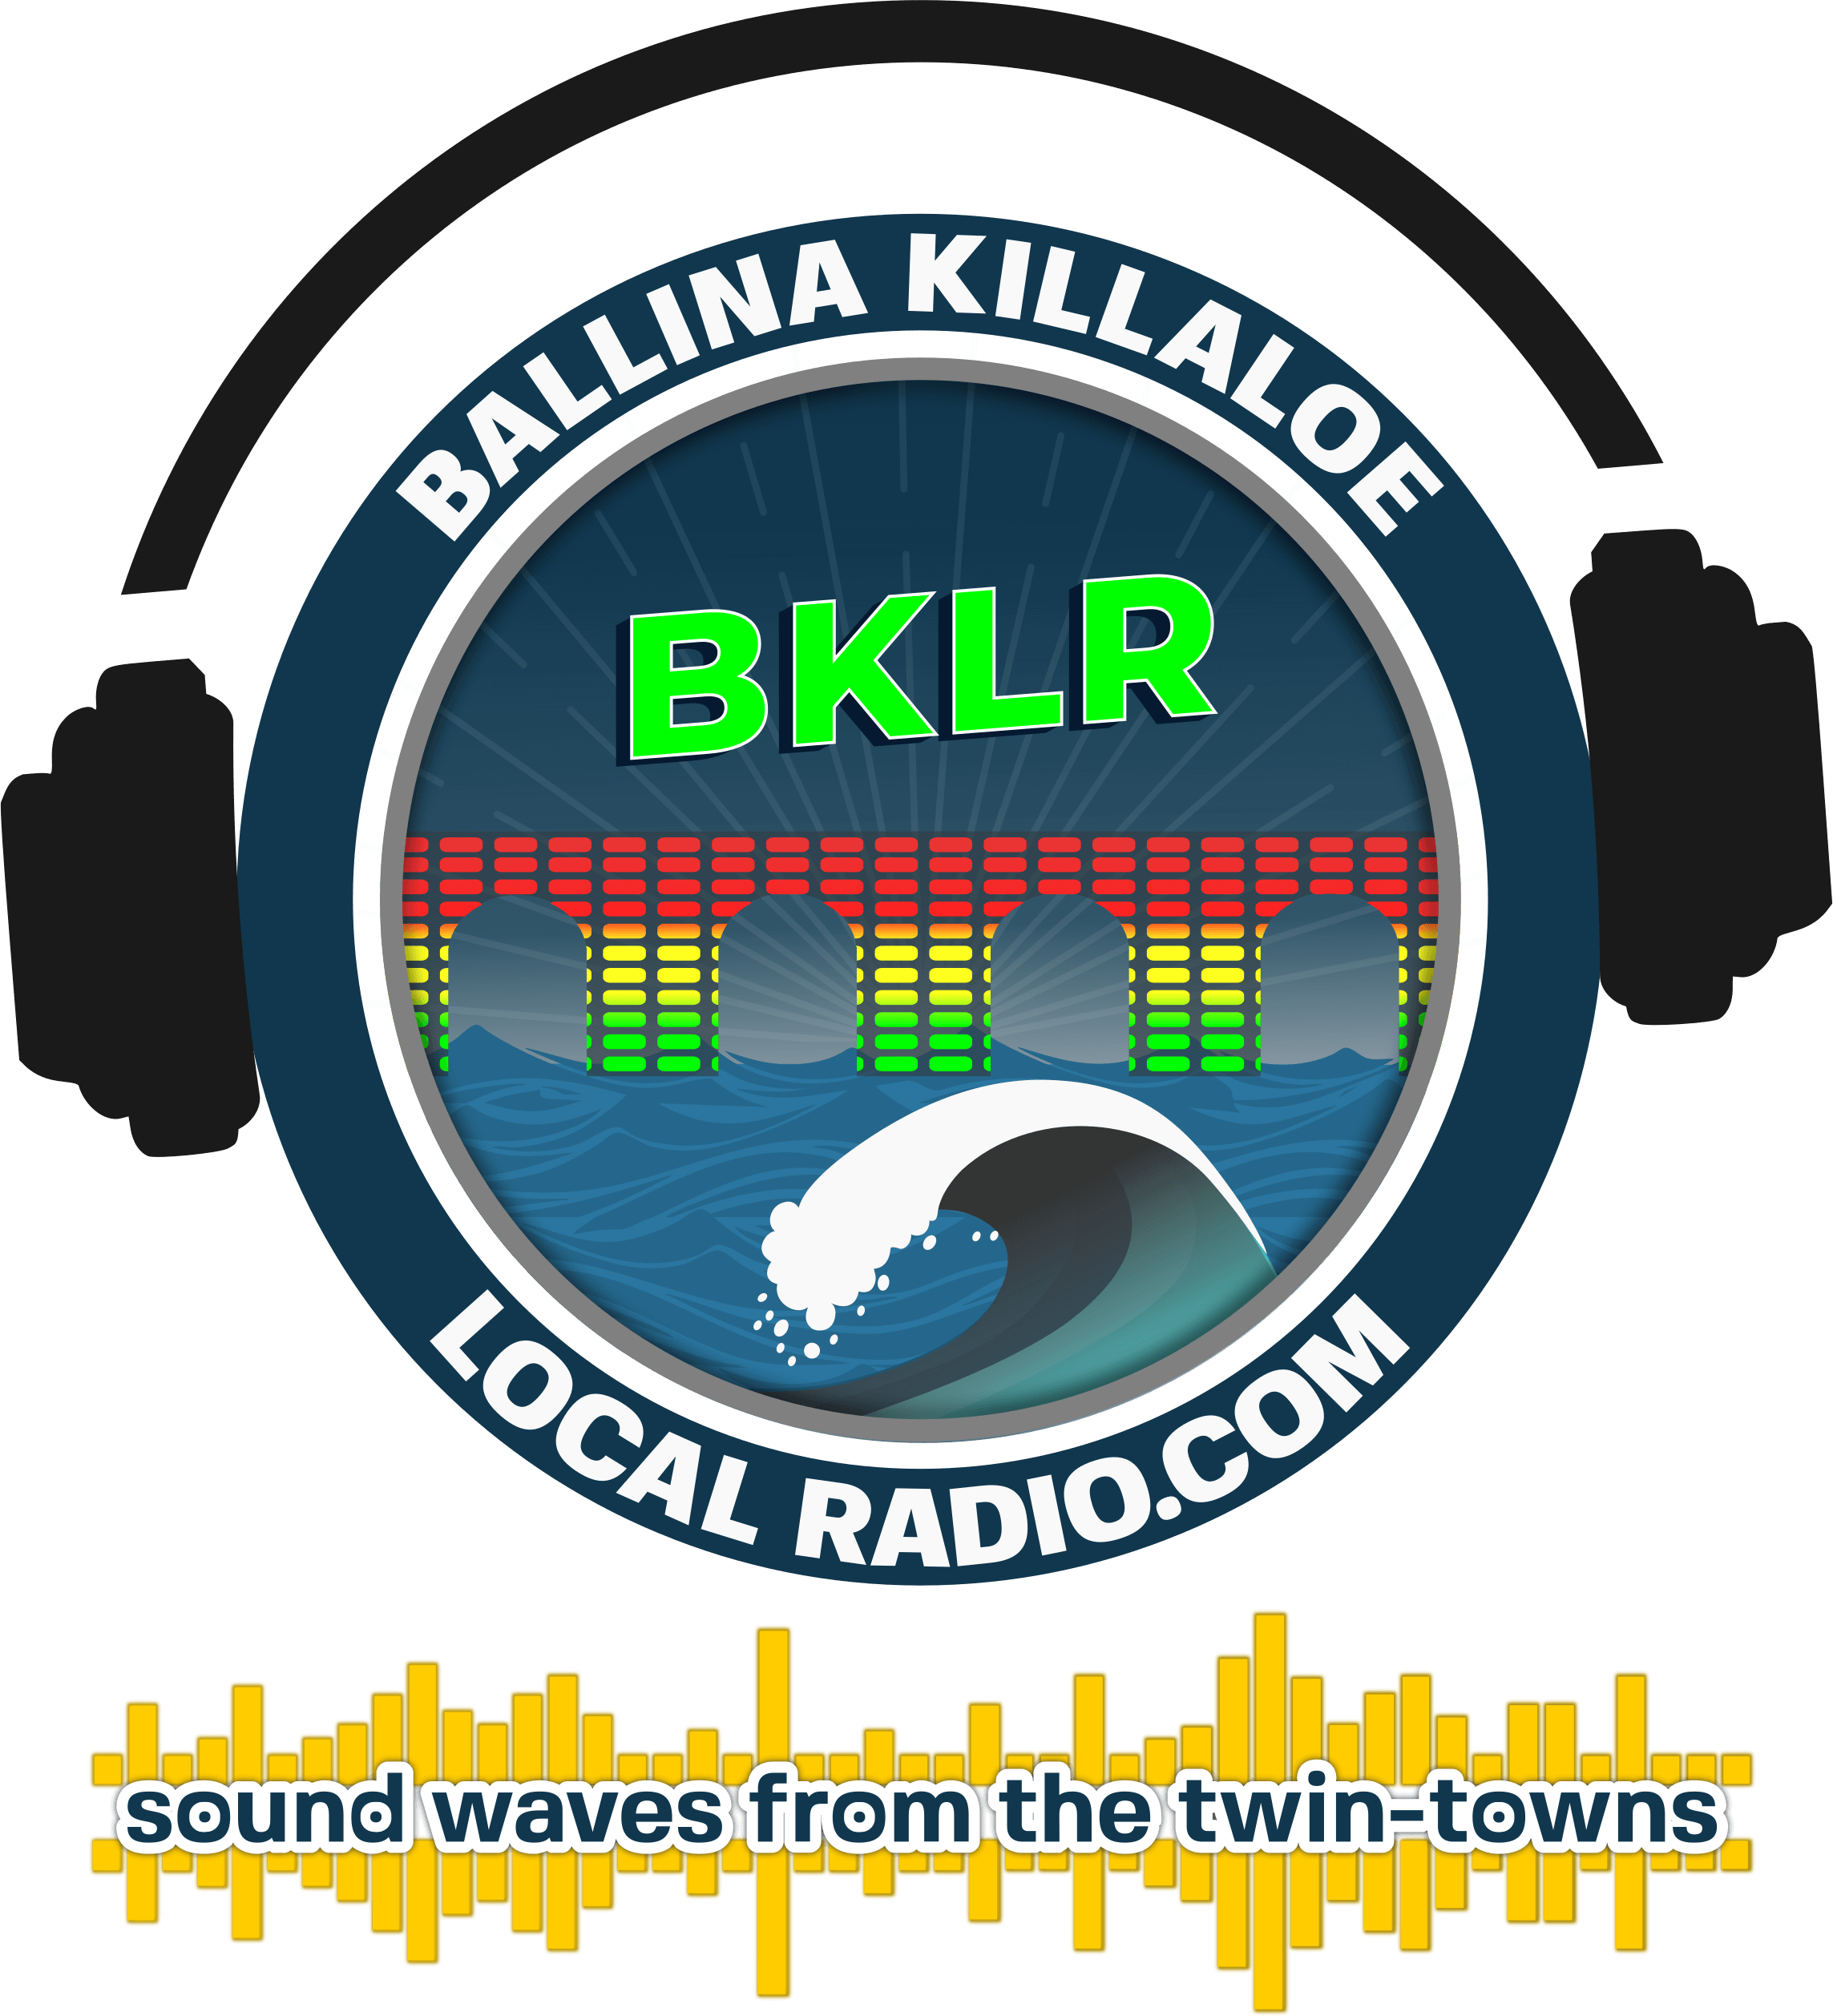 Ballina Killaloe local Radio